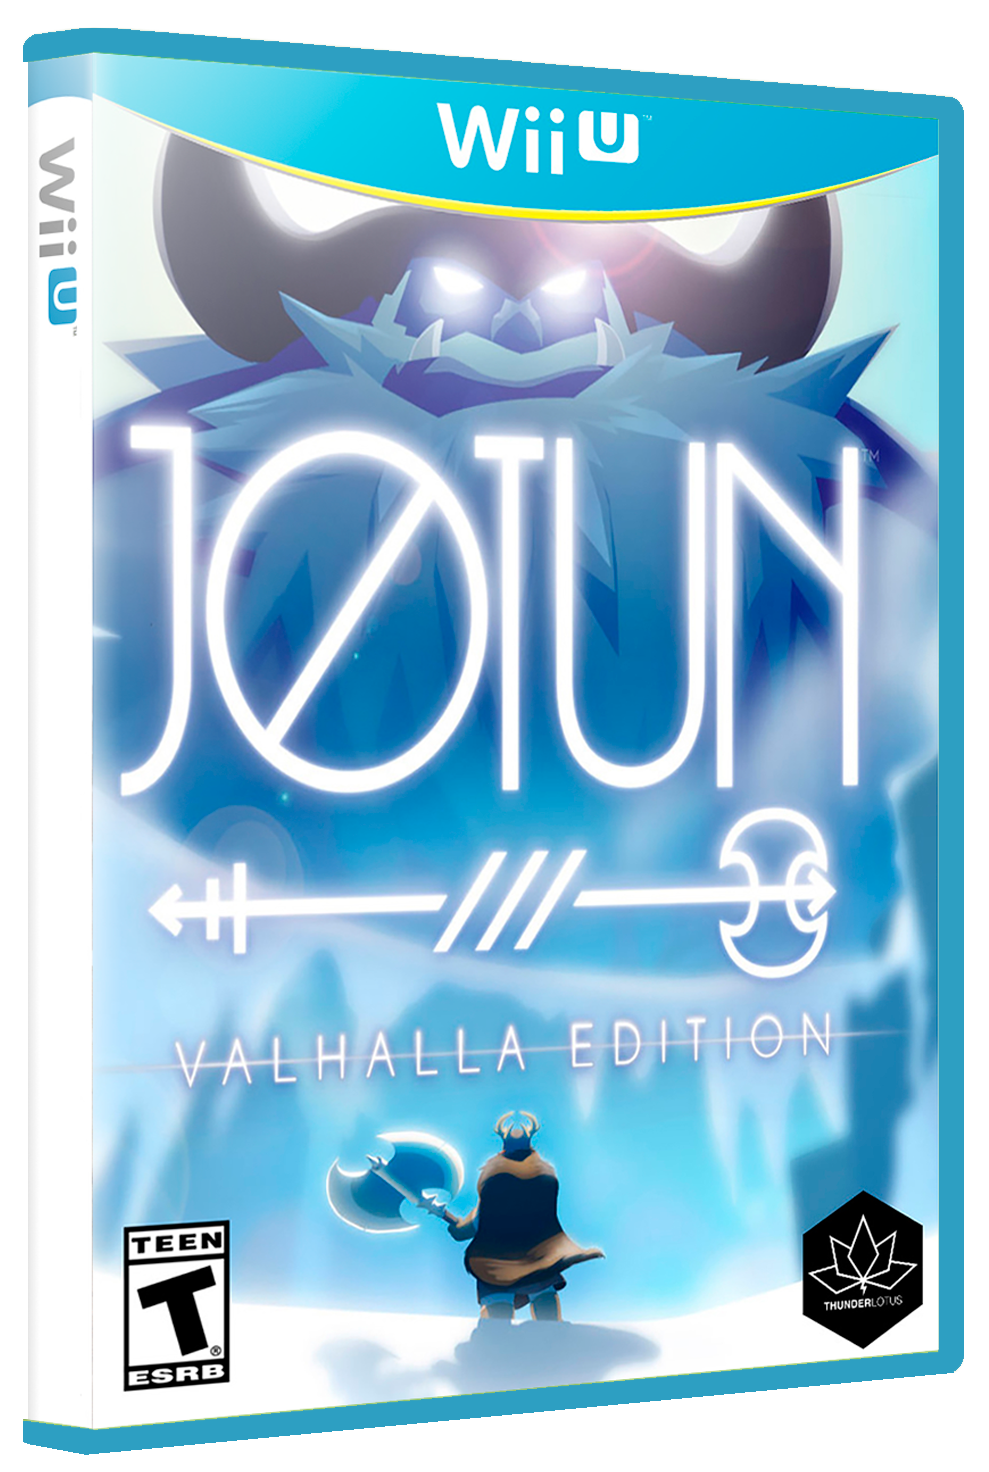 jotun valhalla edition free key